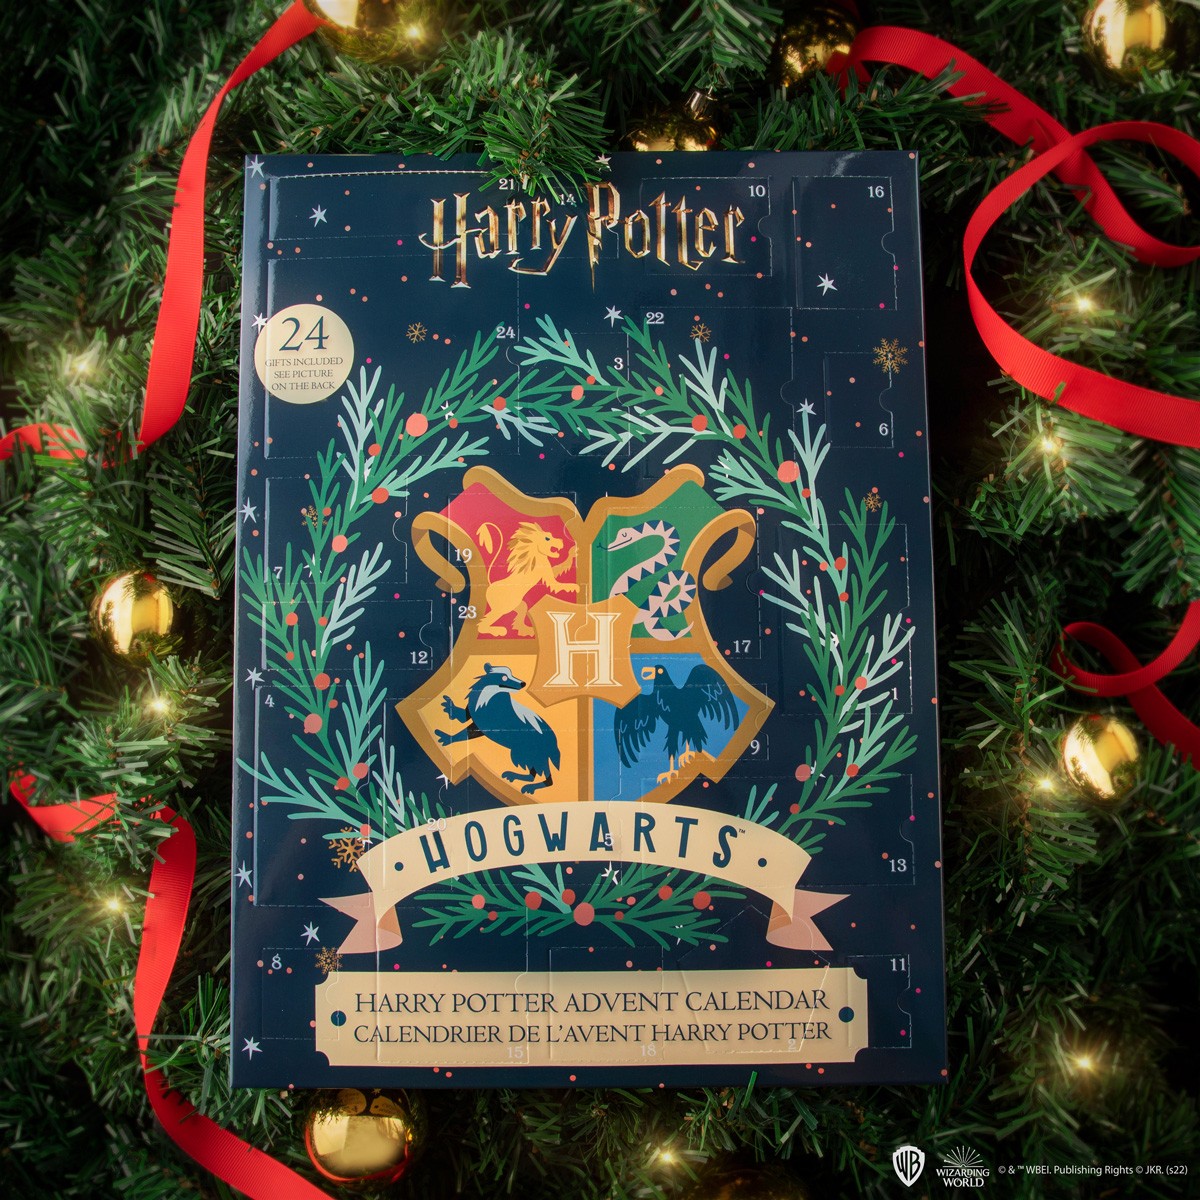 Des idées de cadeaux sous licence officielle Harry Potter - Rapid Cadeau